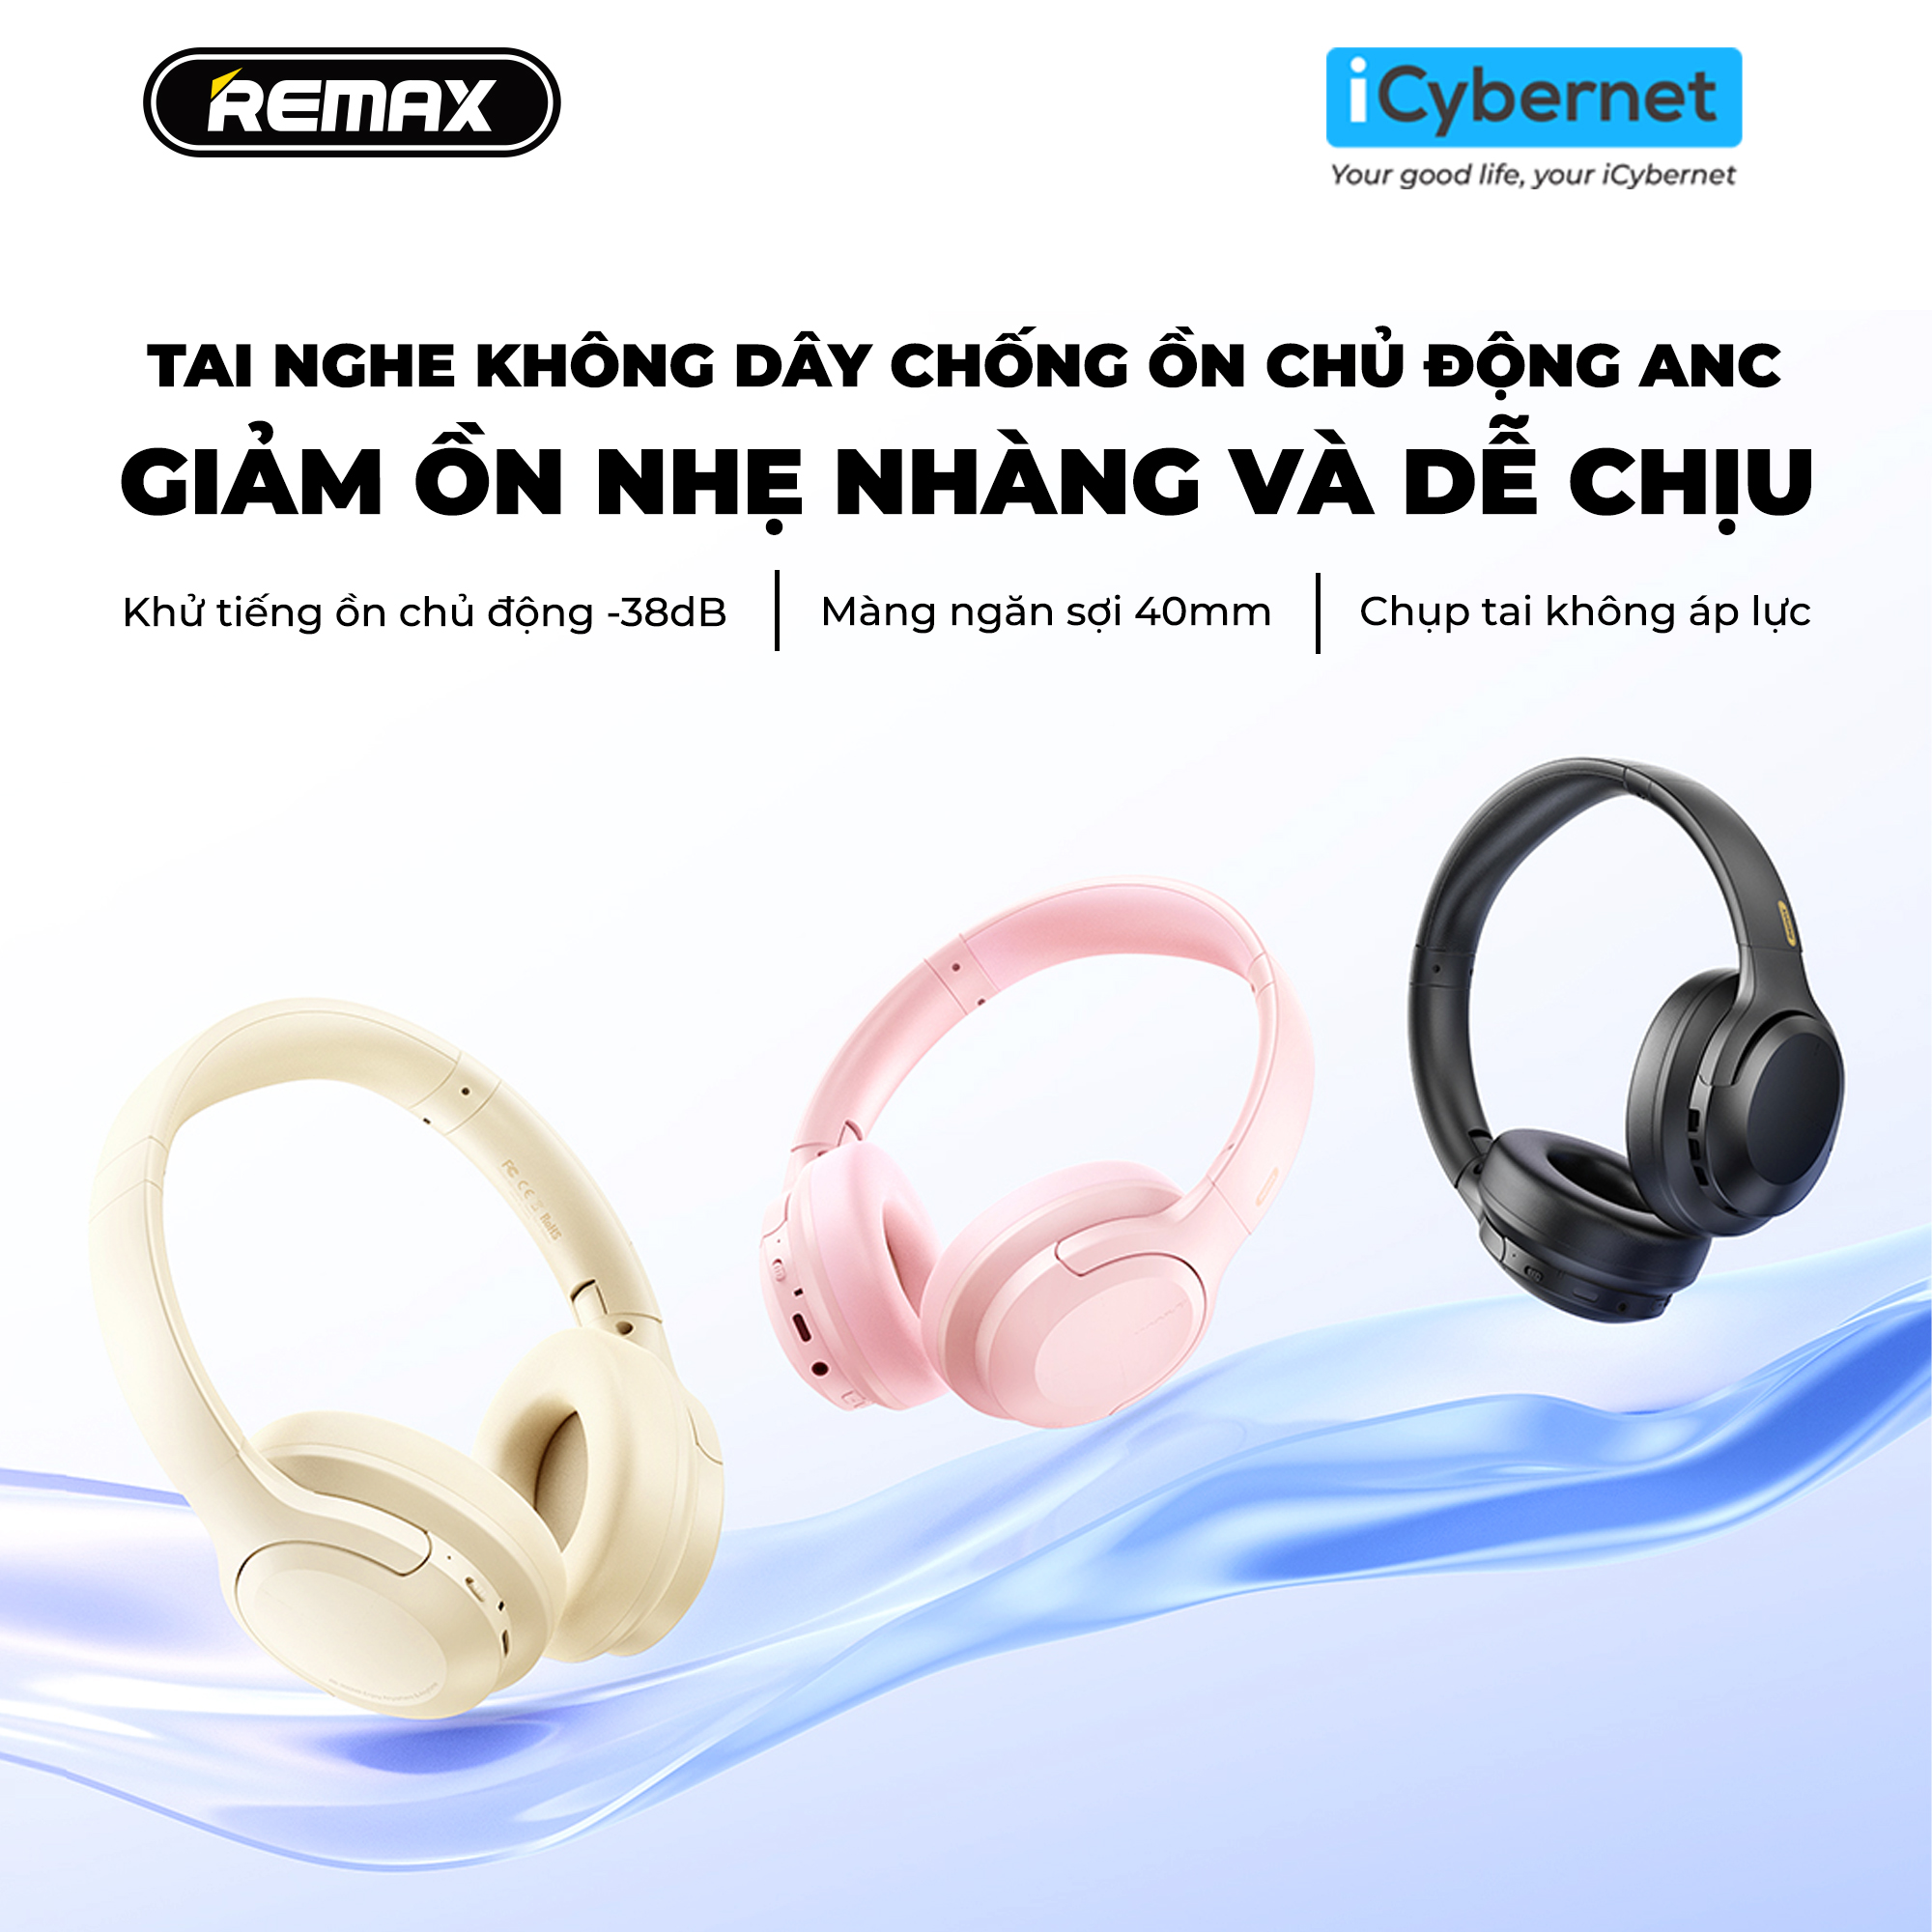 Tai nghe chụp tai không dây chống ồn chủ động ANC Remax RB-900HB - Hàng chính hãng